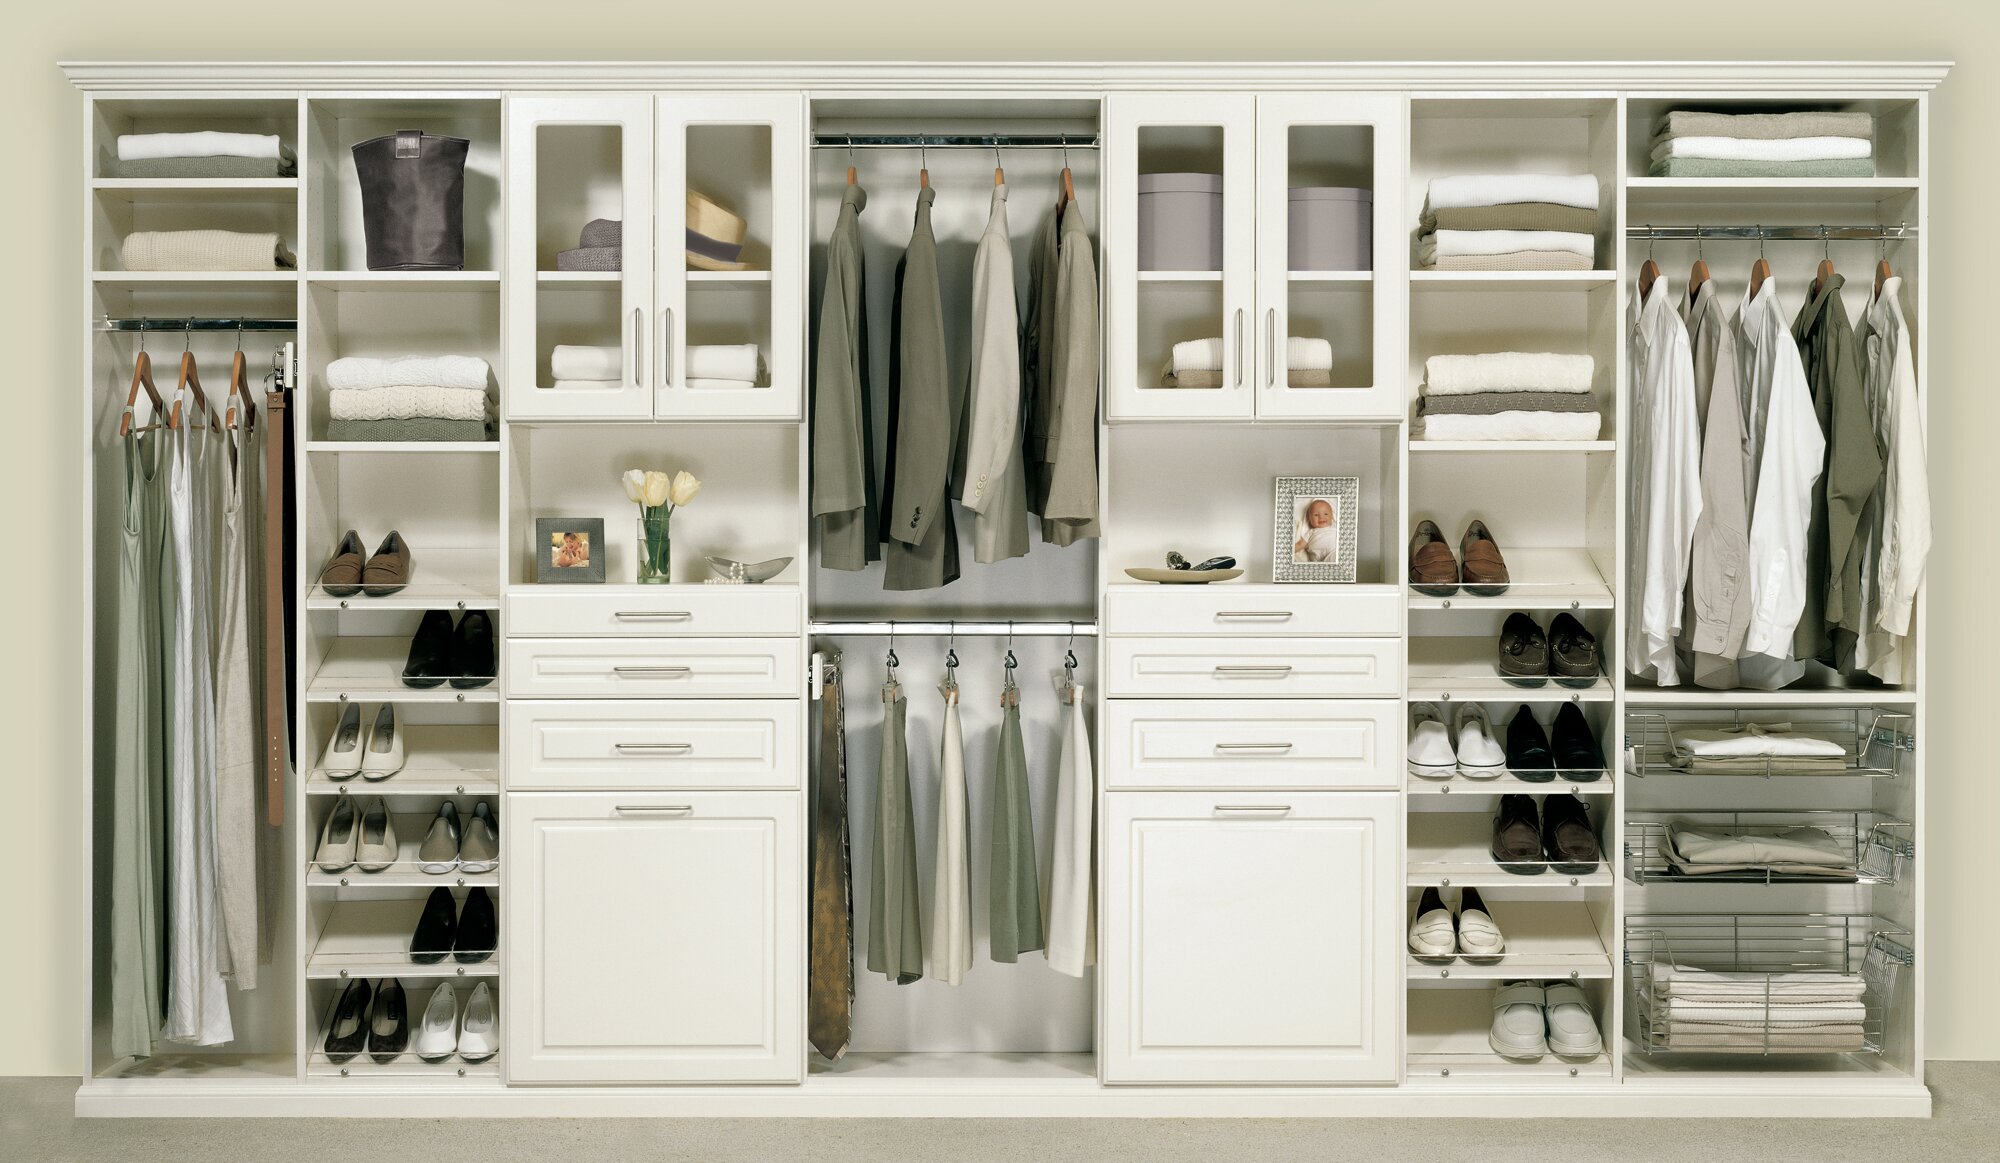 Diy Walk in Closet | Prefab Closet Kits | Diy Walkin Closet